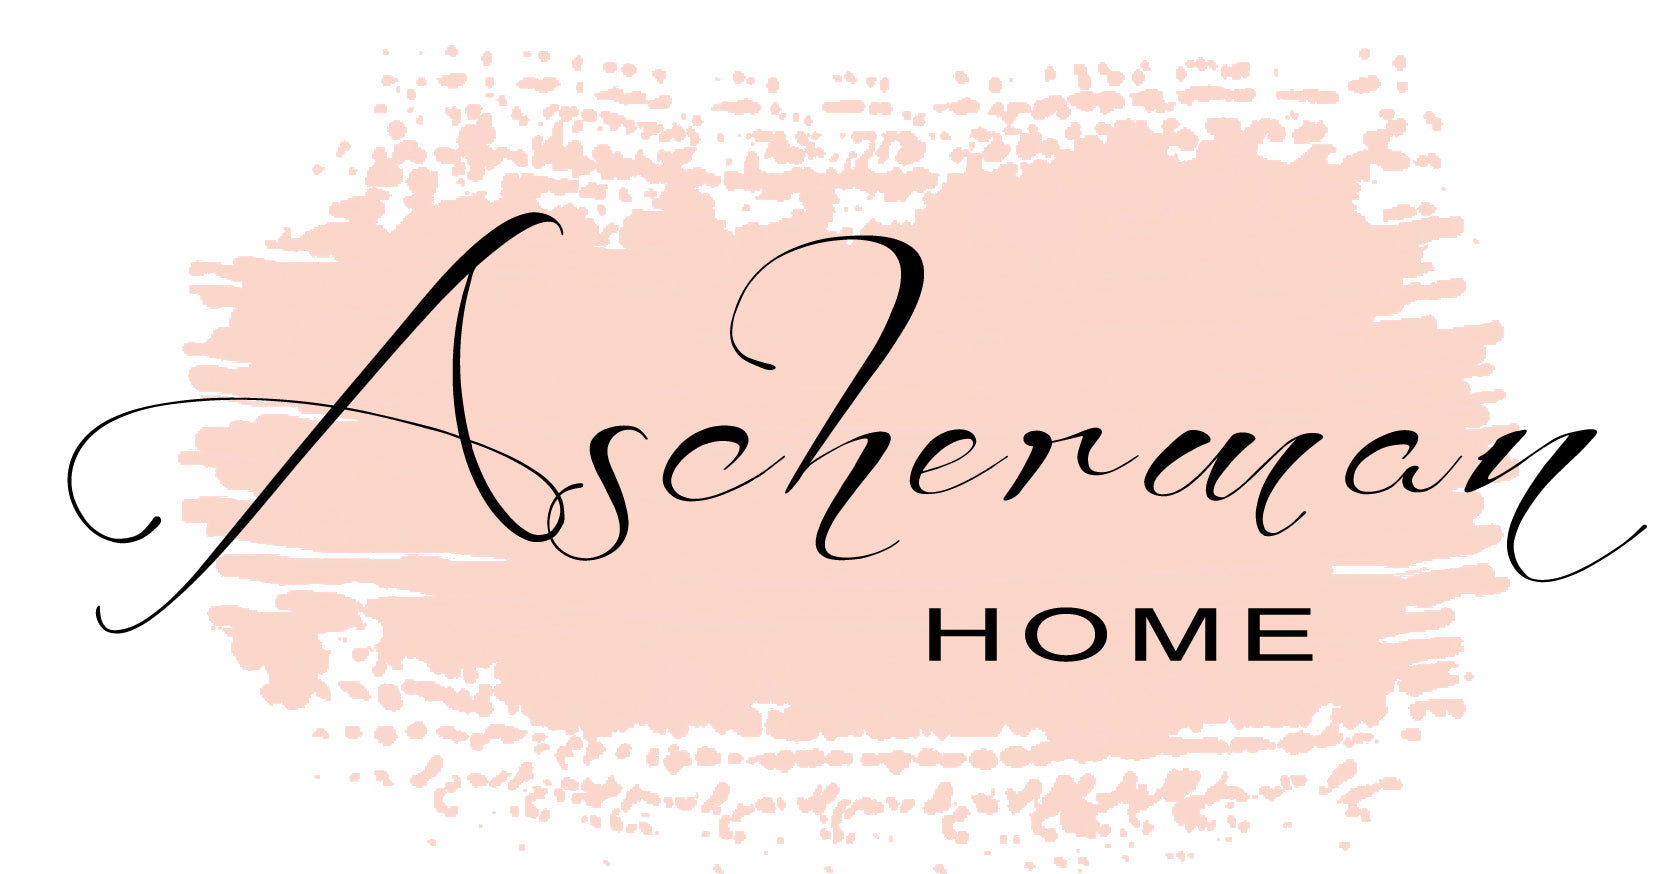 Ascherman Home